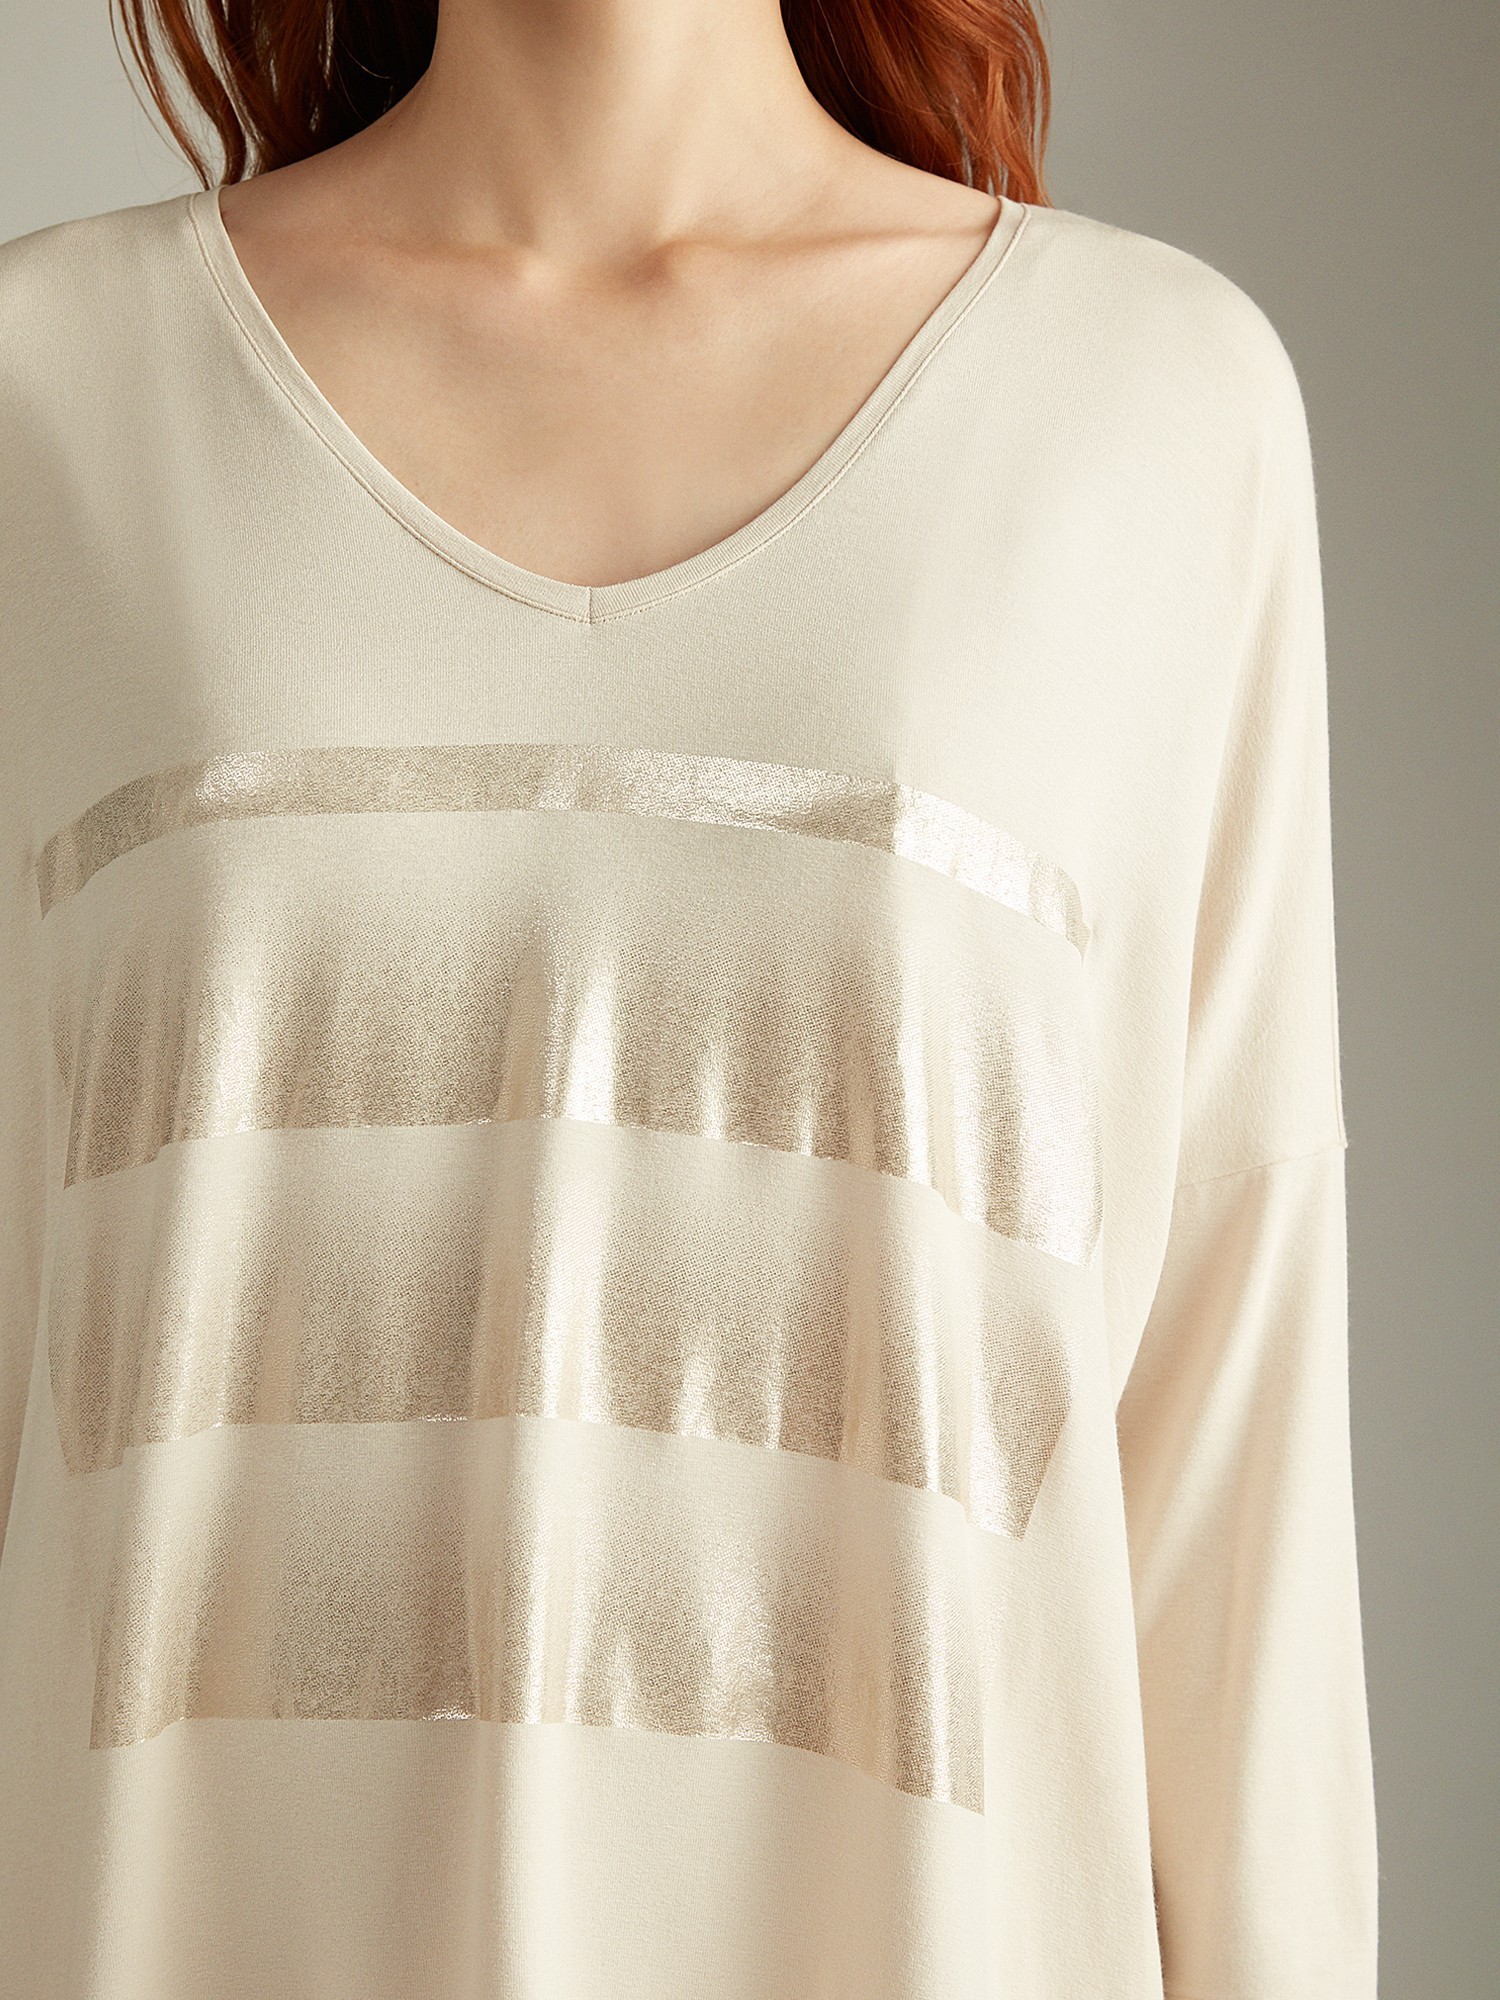 Трикотажная блуза с V-образным вырезом Elis BL0205K - фото 3